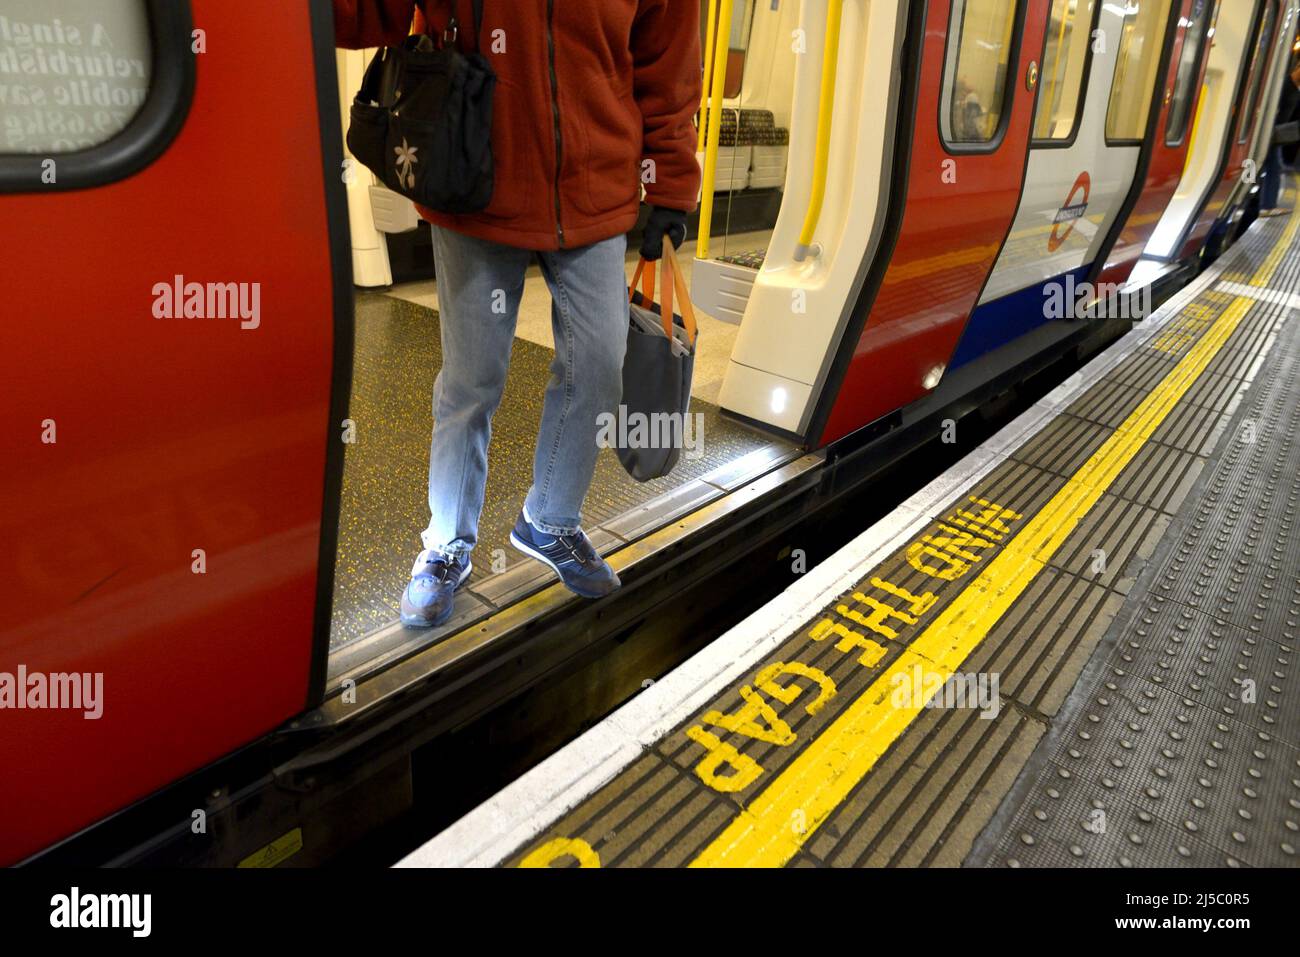 London, England, UK. London underground station platform - Mind The Gap warning Stock Photo